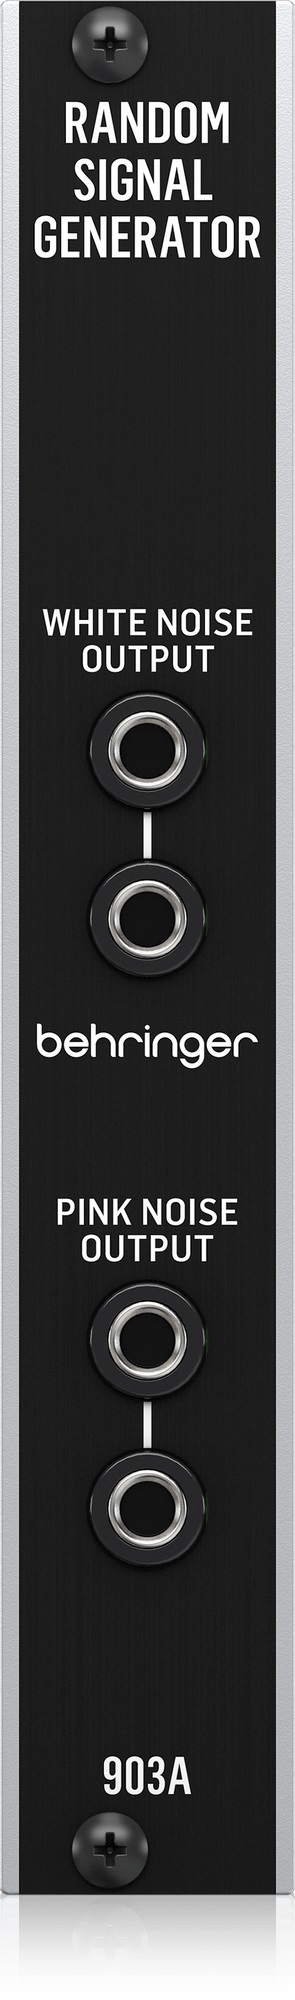 Синтезаторы Behringer 903A RANDOM SIGNAL GENERATOR